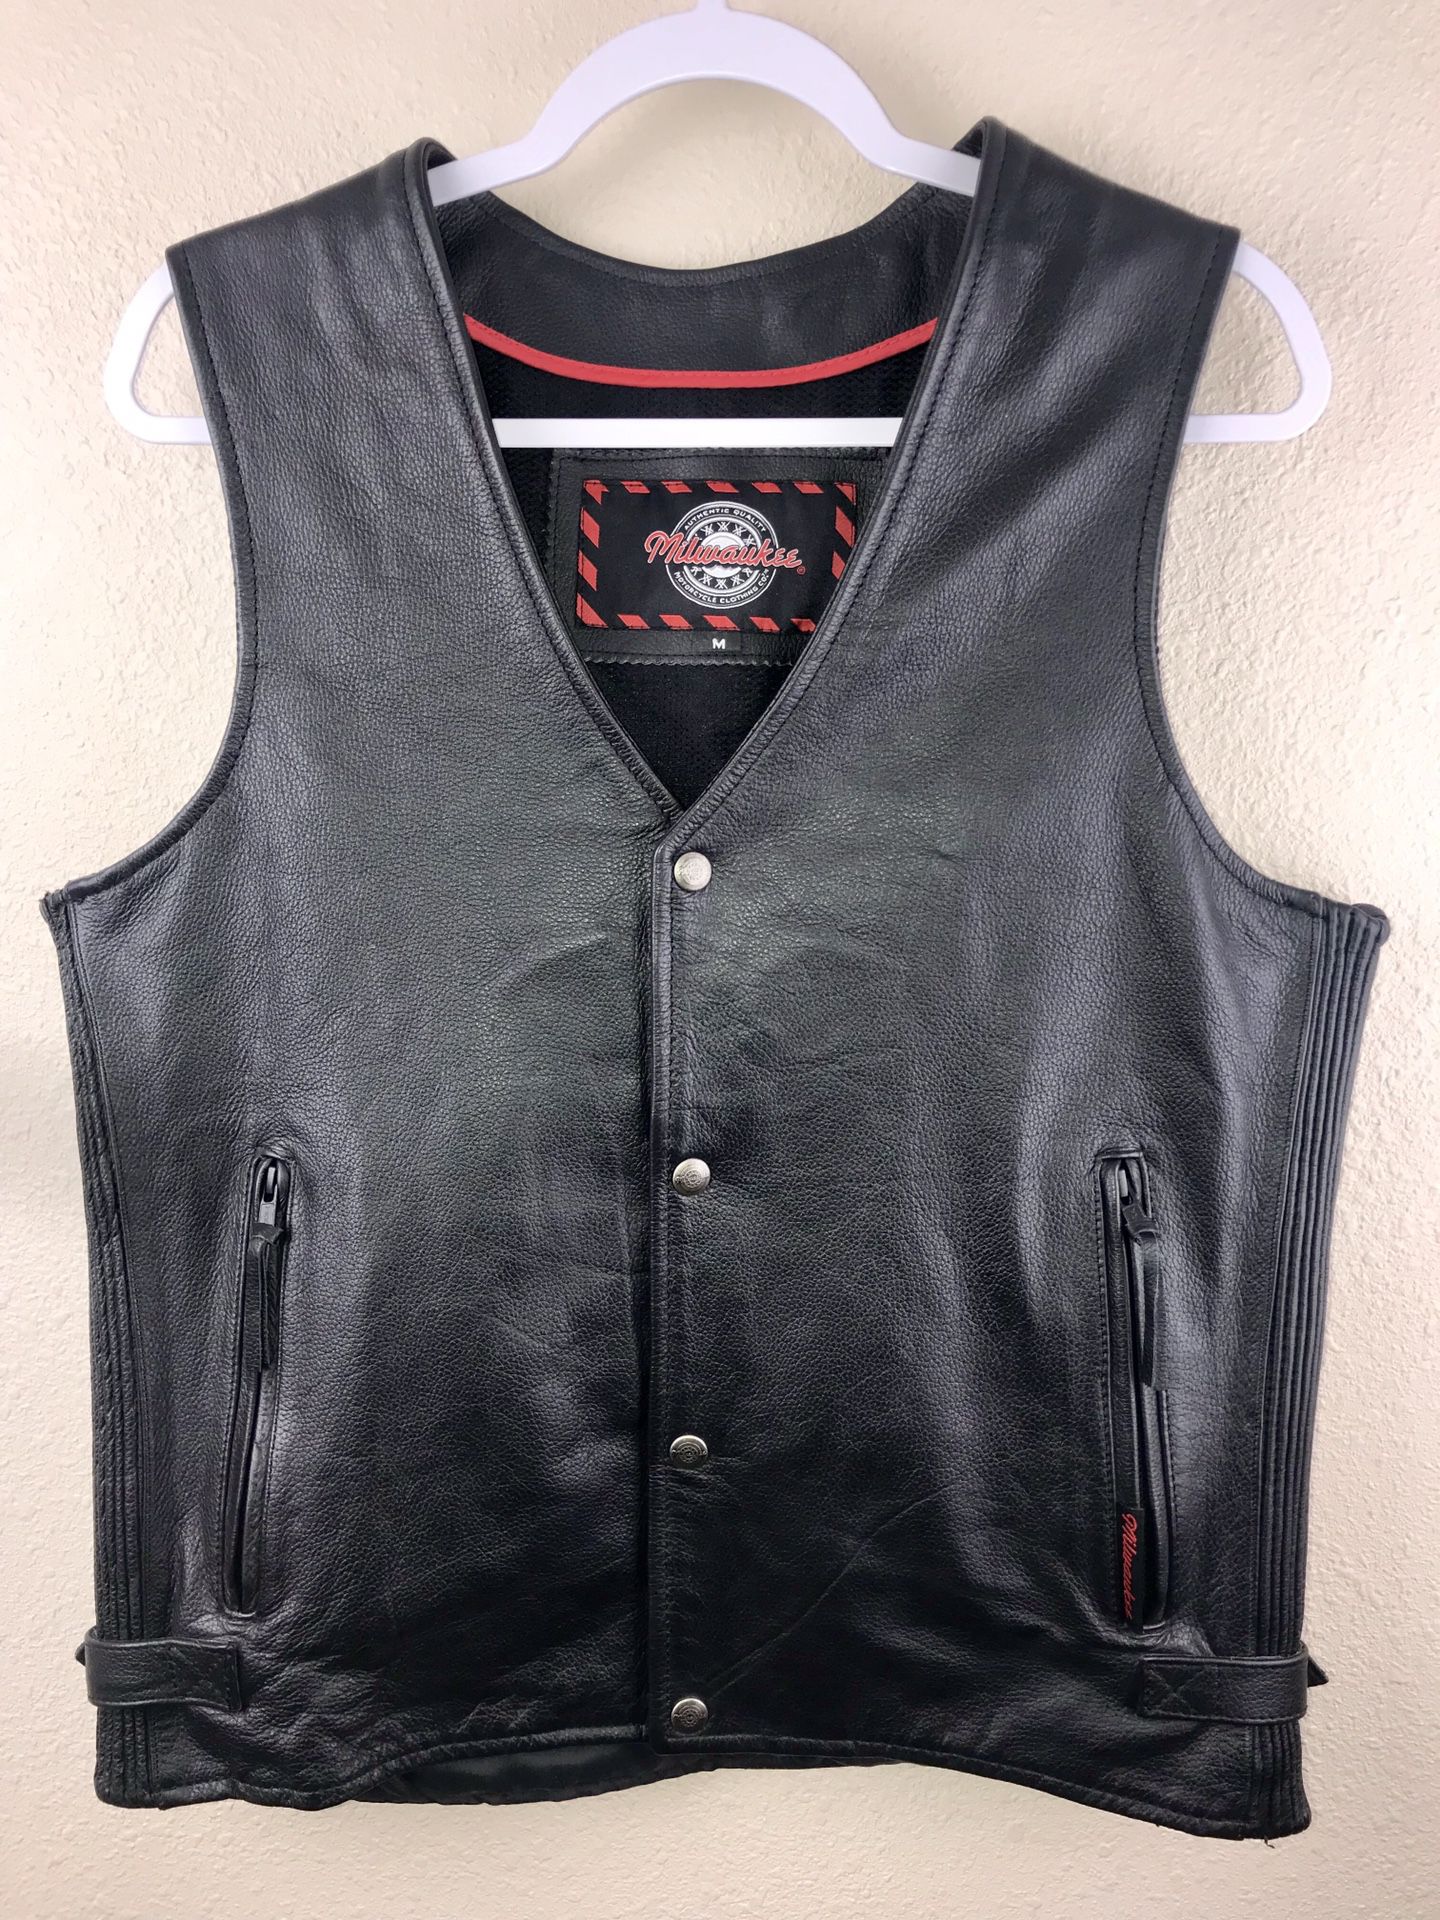 Milwaukee Leather Vest Mens Medium Like New